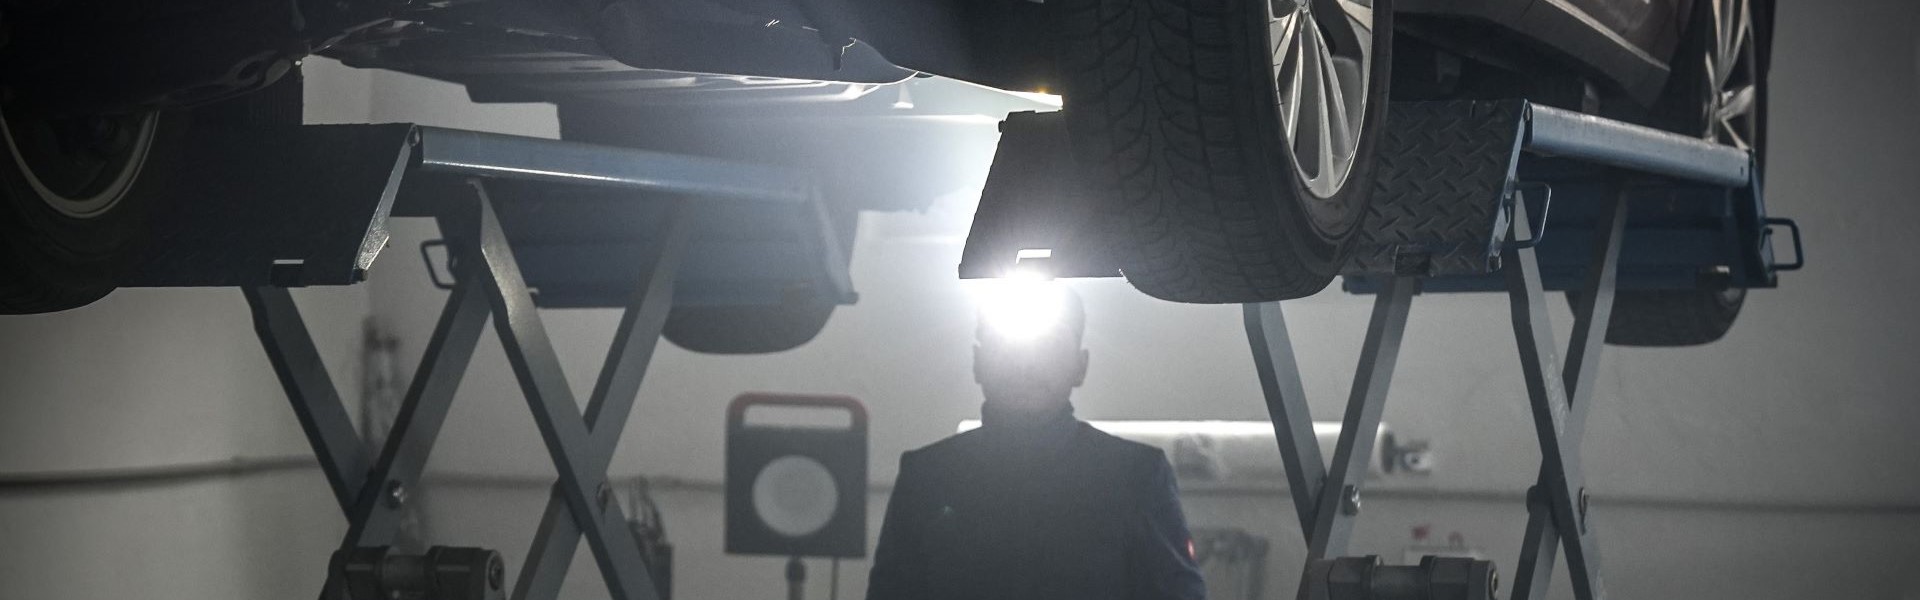 Das Bild zeigt einen Auto-Mechaniker mit Stirnlampe unter einer Hebebühne